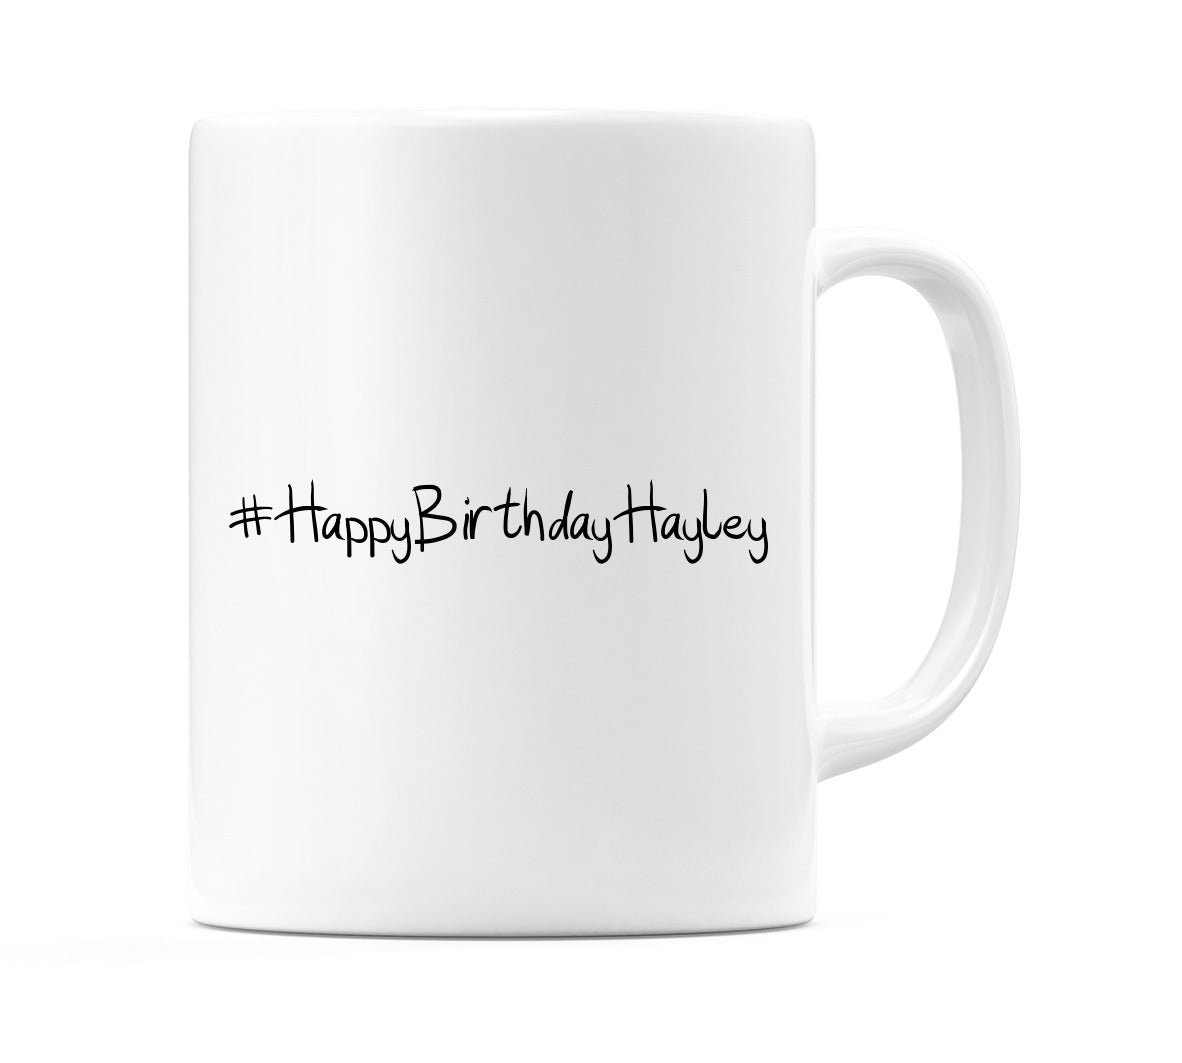 #HappyBirthdayHayley Mug